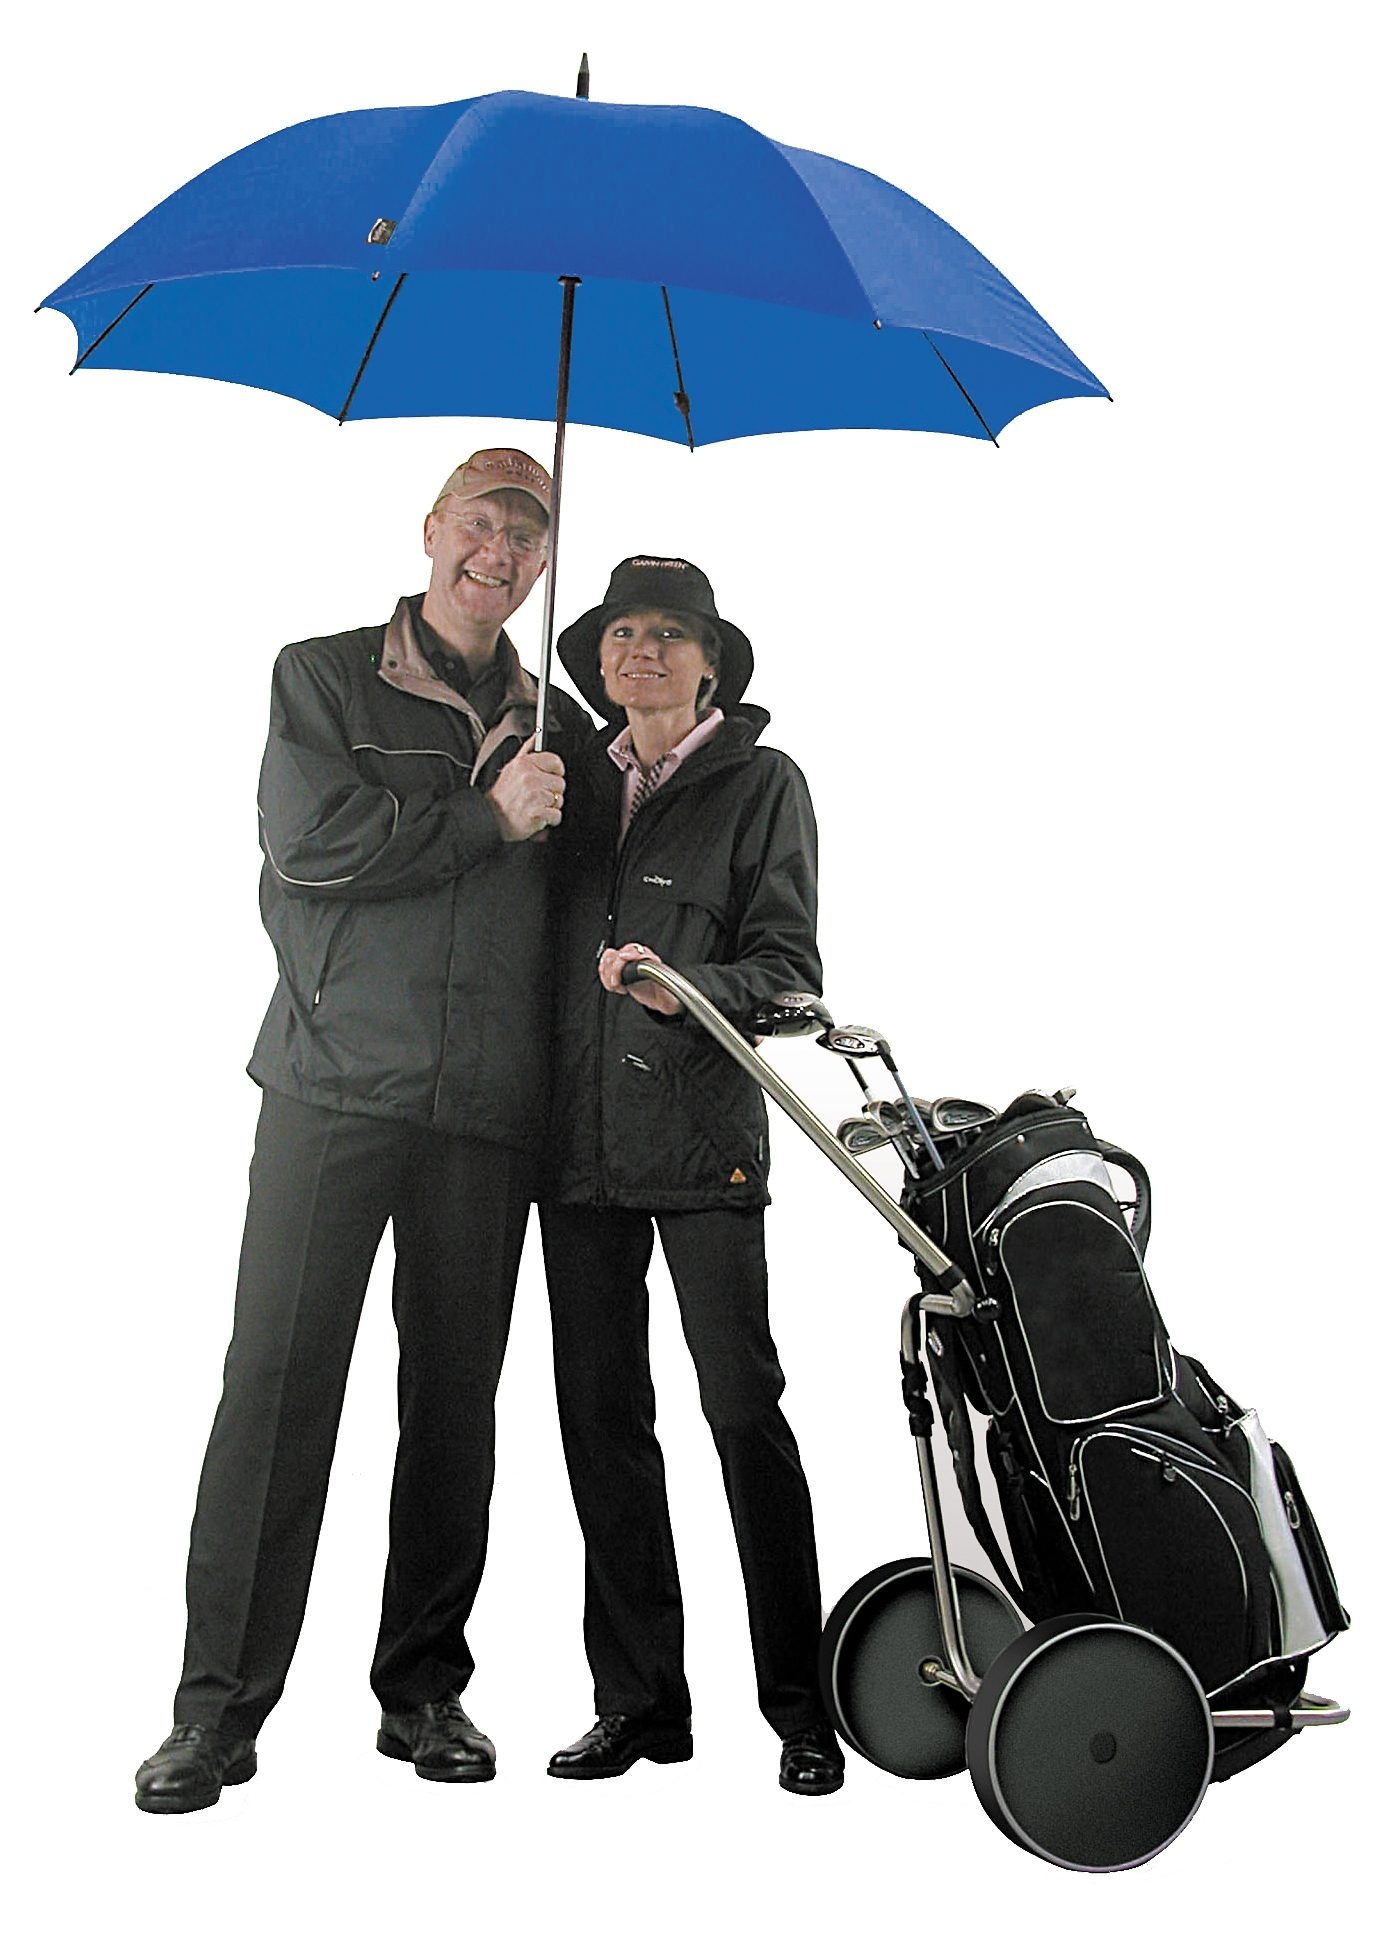 rain« Stockregenschirm »birdiepal® EuroSCHIRM® online kaufen